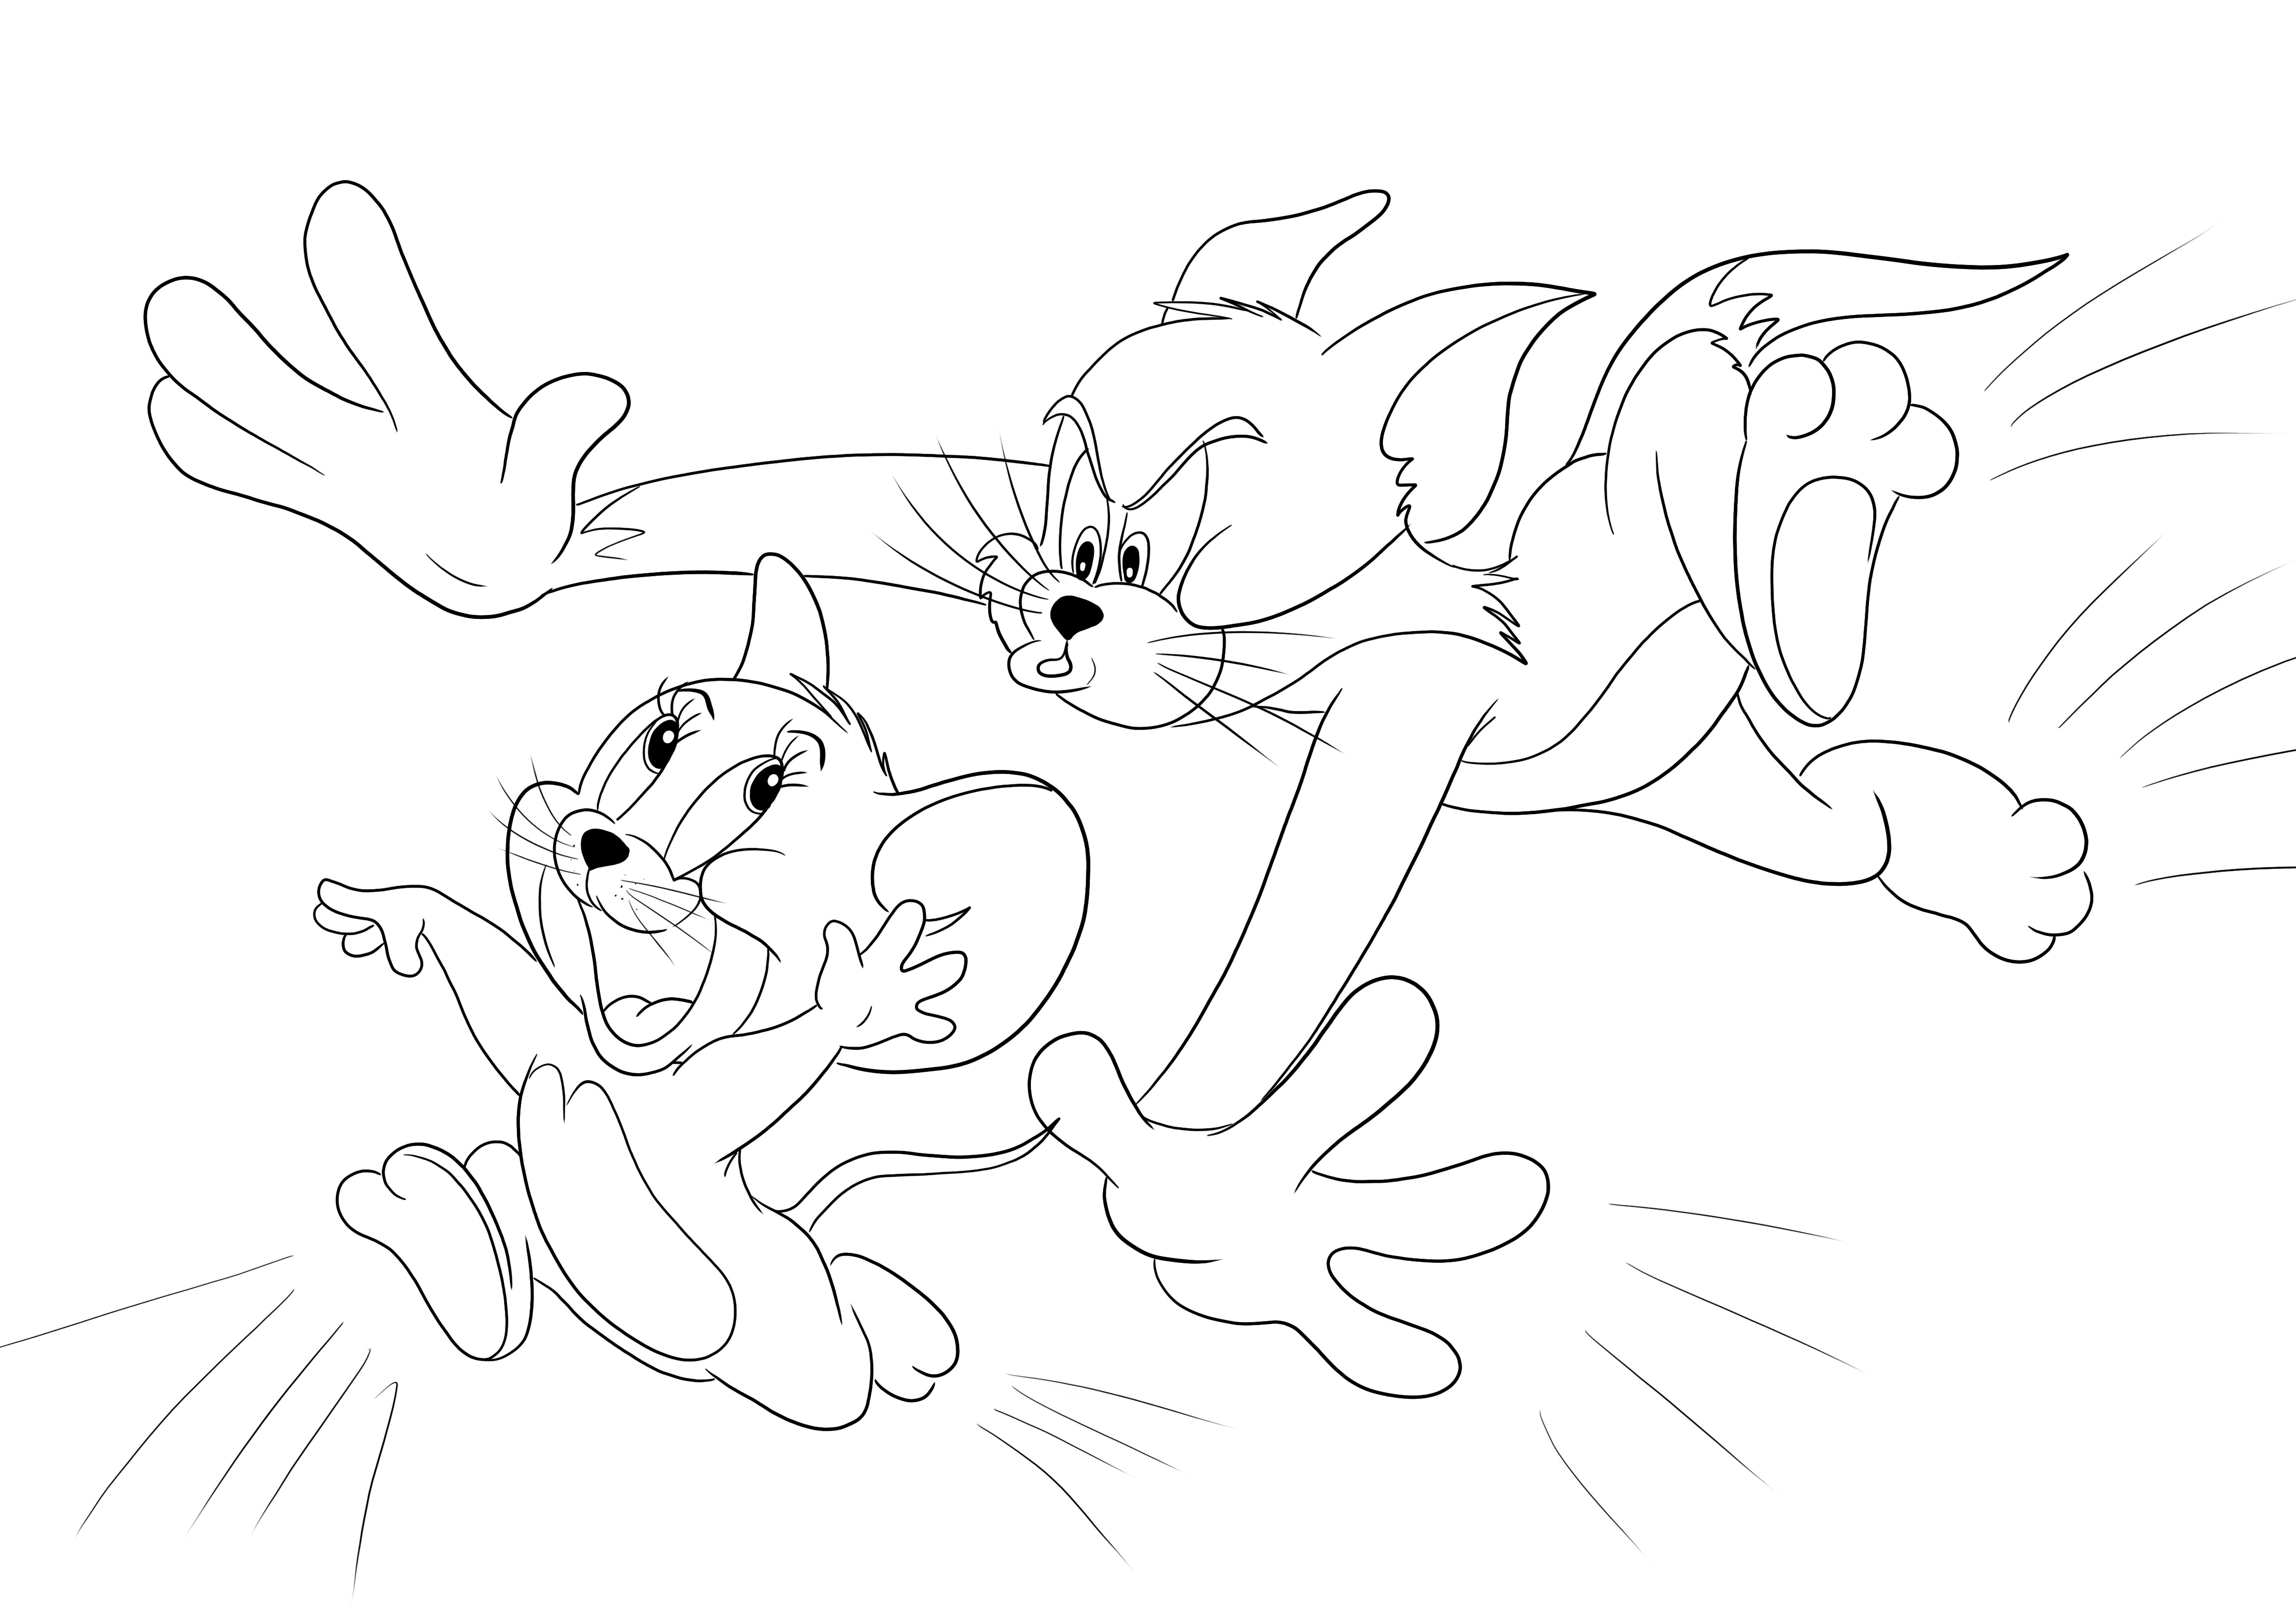 Tom üldözi Jerry színezését szórakozásból, és ingyenesen nyomtathat vagy letölthet